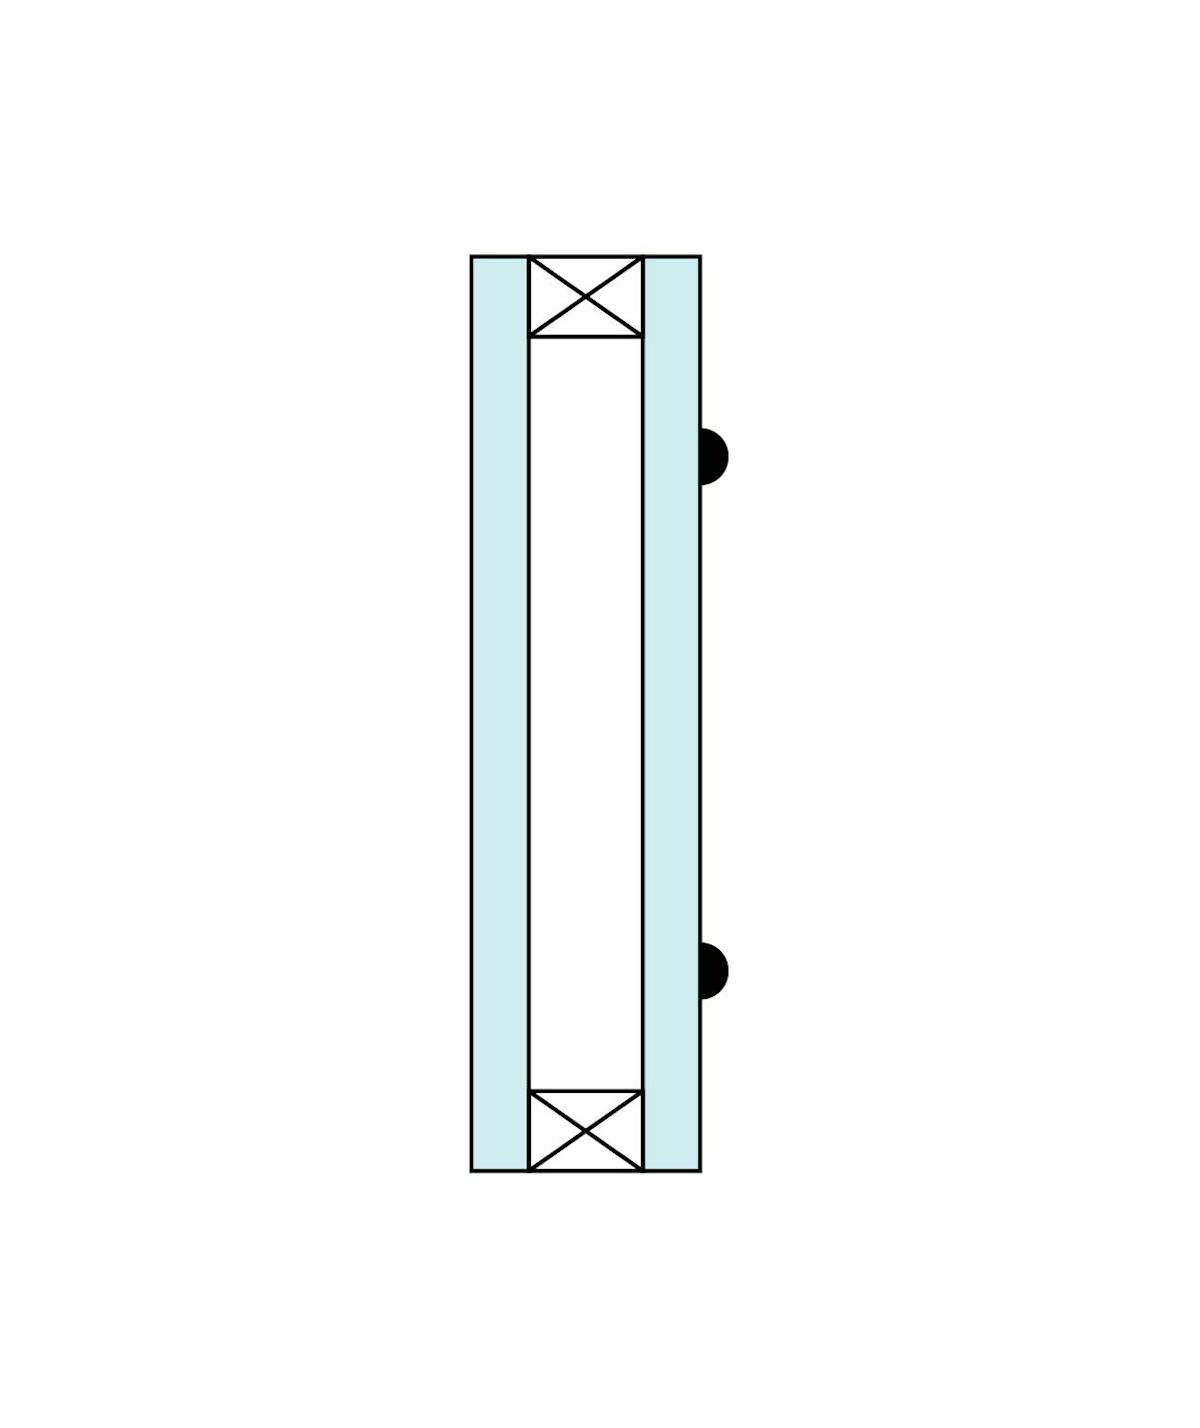 ステンドグラスのペアガラスを制作する場合の描線 - 片面のみ描線 (外側)